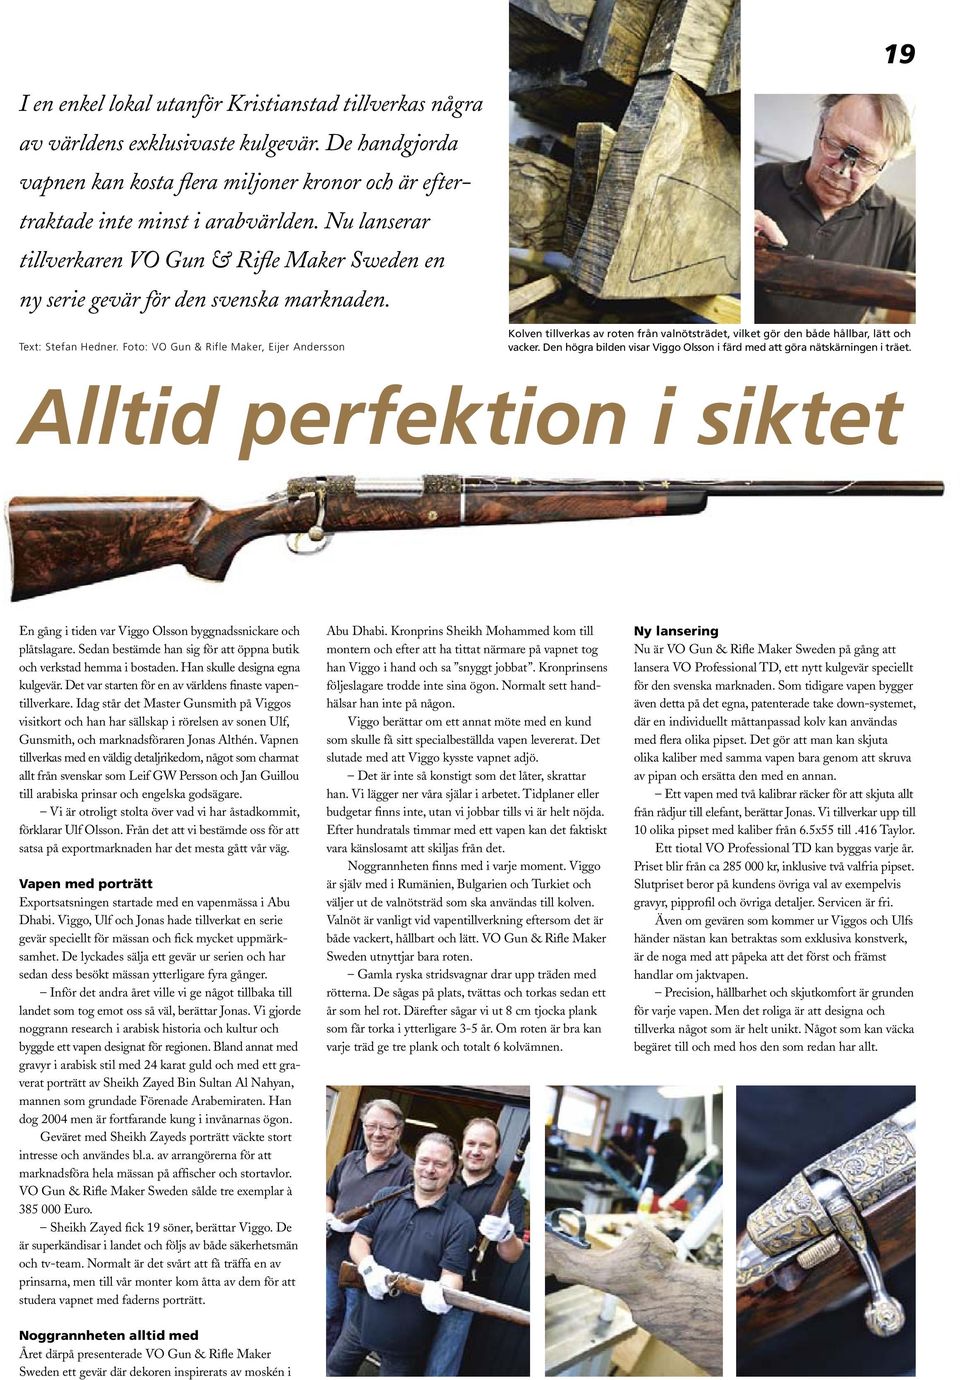 Foto: VO Gun & Rifle Maker, Eijer Andersson Kolven tillverkas av roten från valnötsträdet, vilket gör den både hållbar, lätt och vacker.